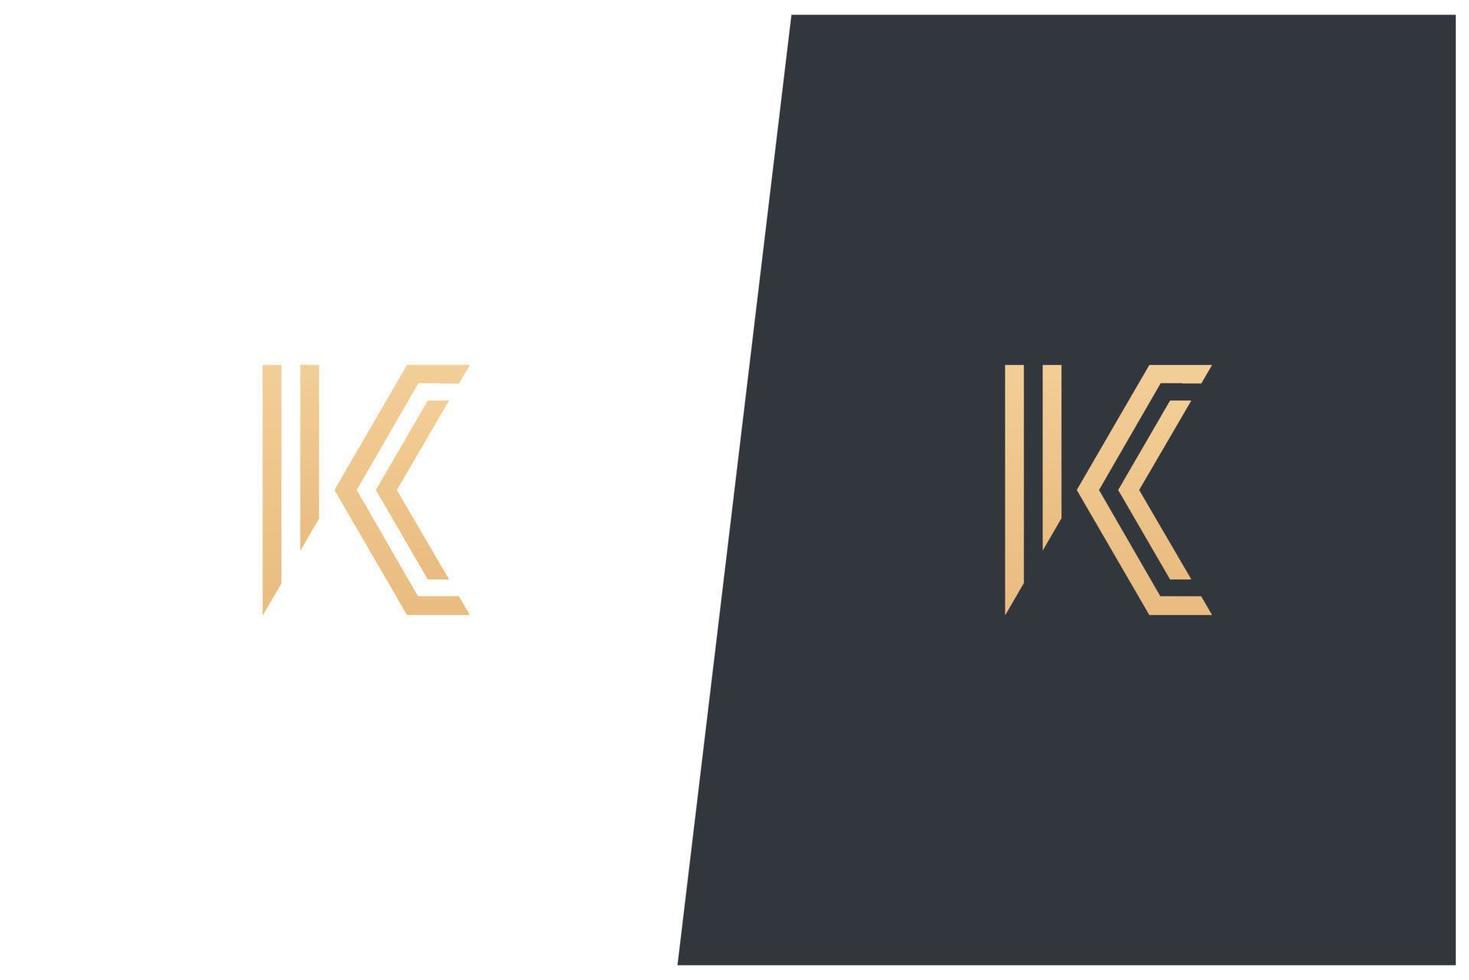 K Letter Logo Vector Concept Icon Trademark. Universal K Logotype Brand